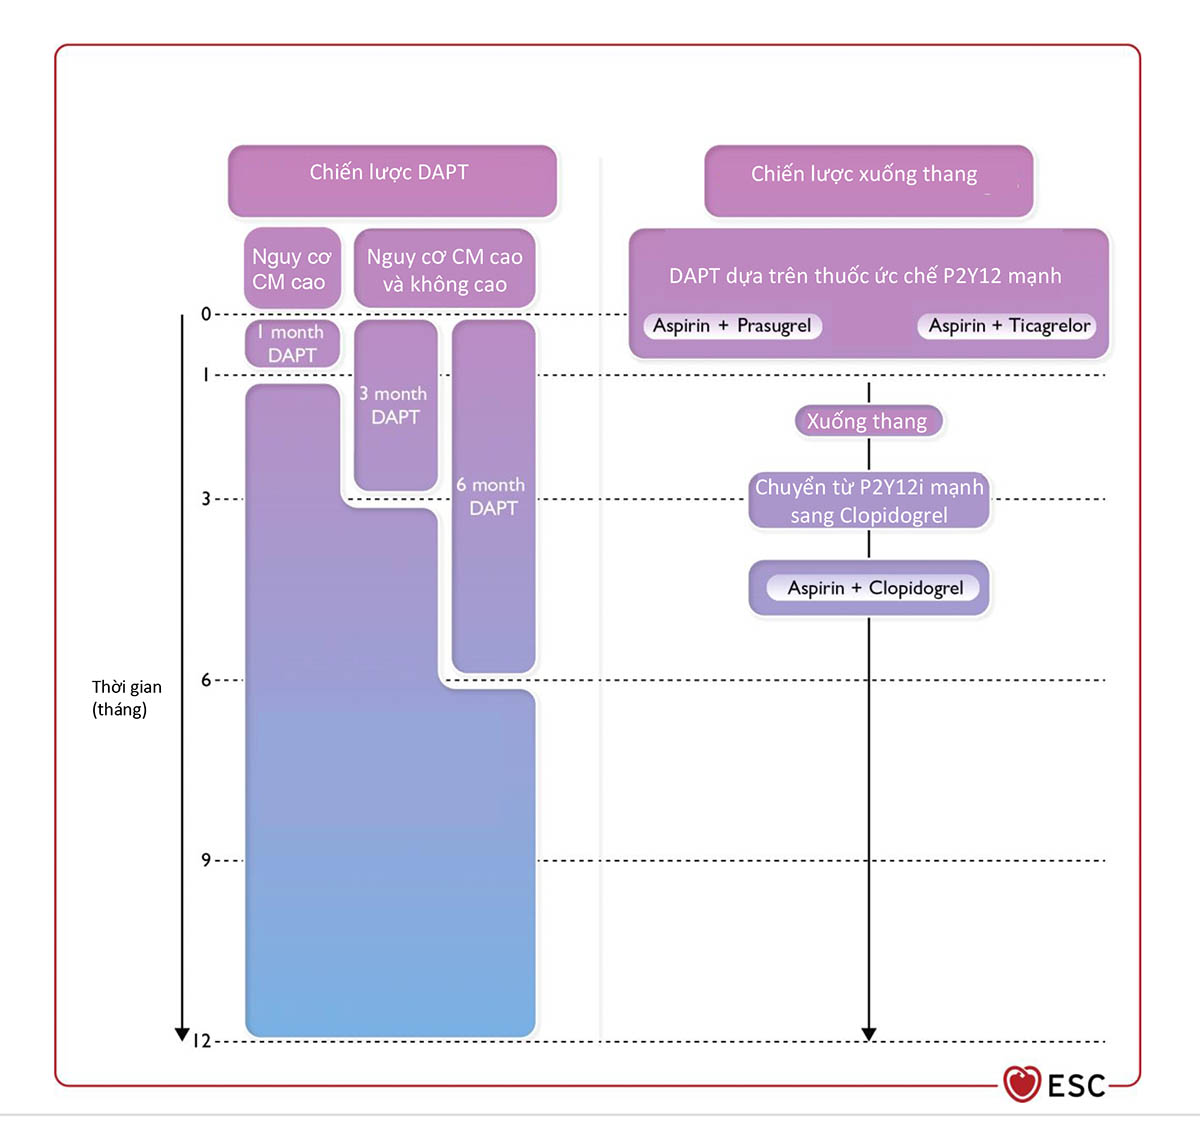 Hình 11 Chiến lược kháng tiểu cầu thay thế để giảm nguy cơ chảy máu trong 12 tháng đầu sau HCVC